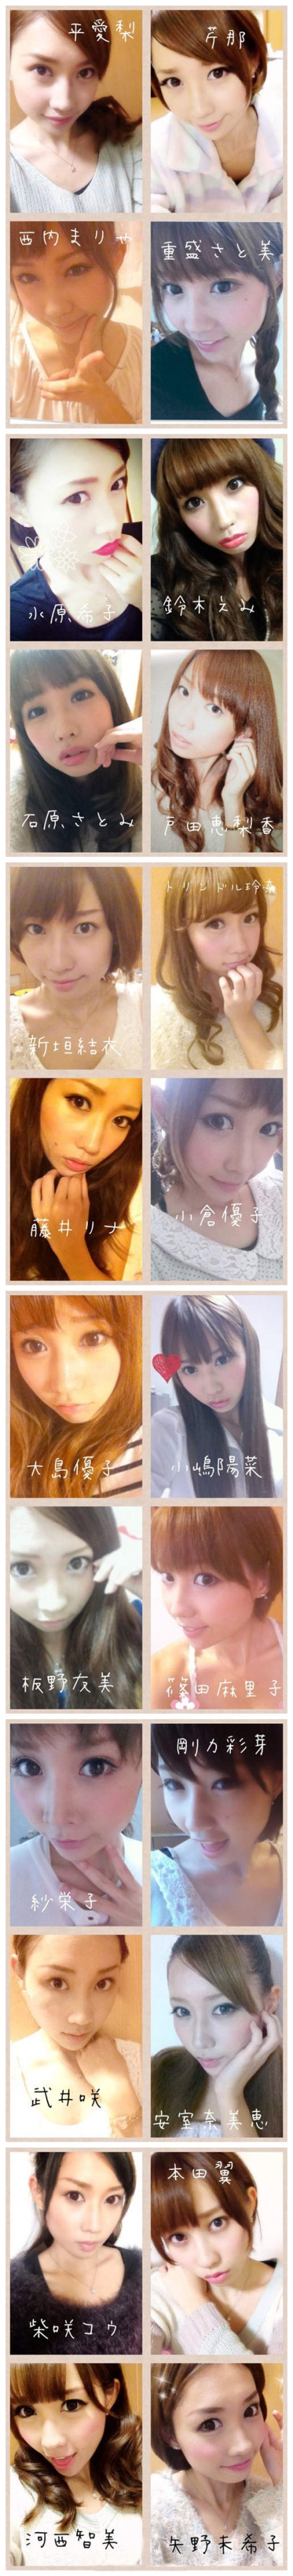 日本高中女生神奇化妆术 模仿24位女星妆容(组图)